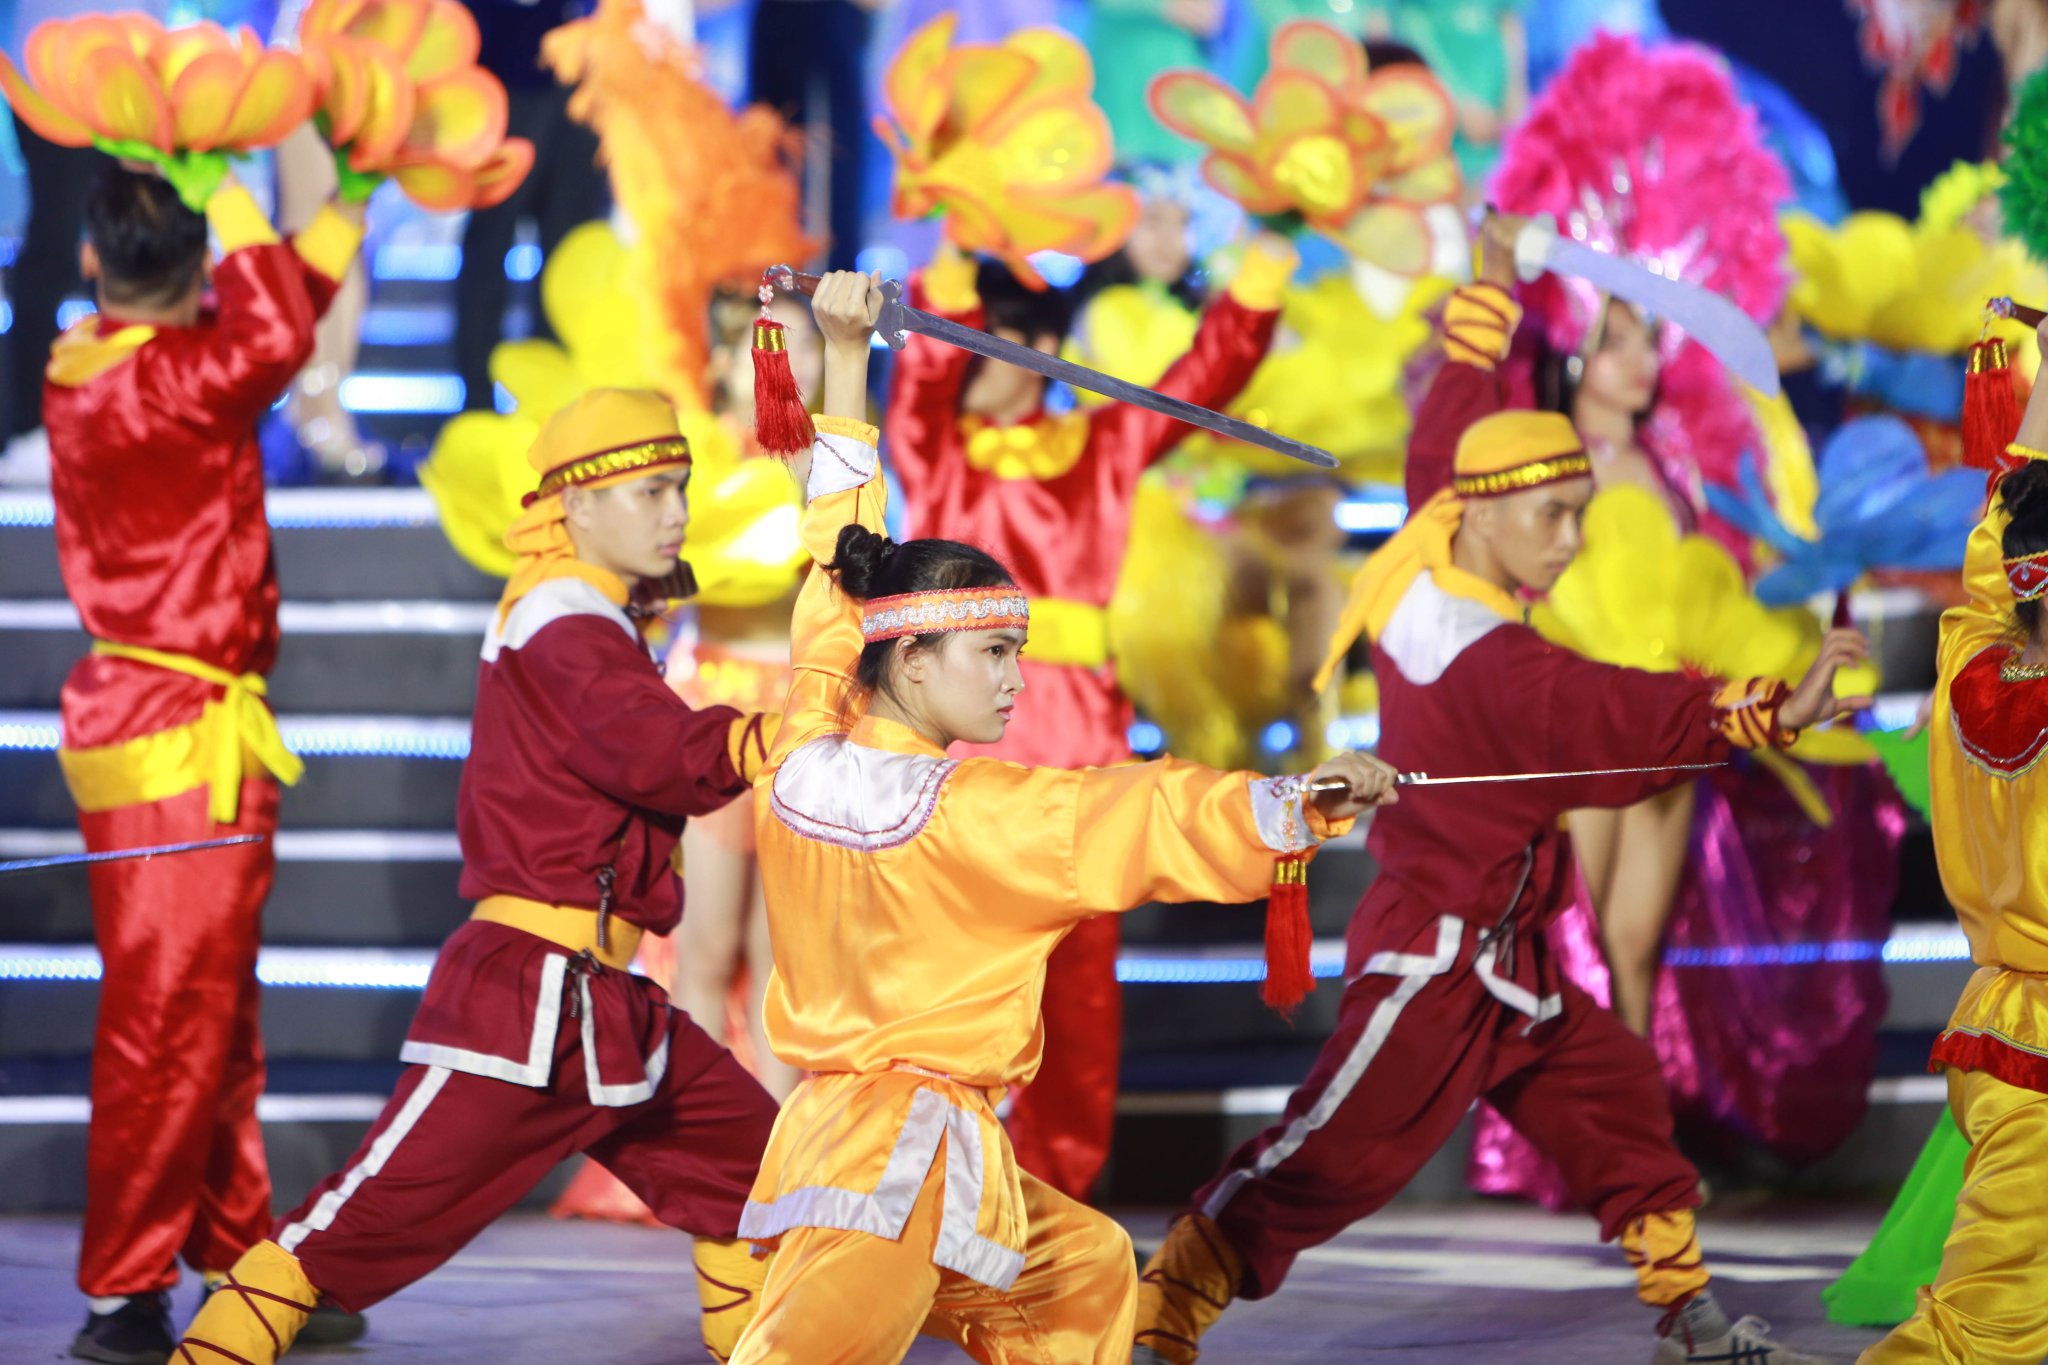 Võ cổ truyền Bình Định có mặt trong các dịp Tết, đại lễ tại Bình Định và mang đi biểu diễn các nơi